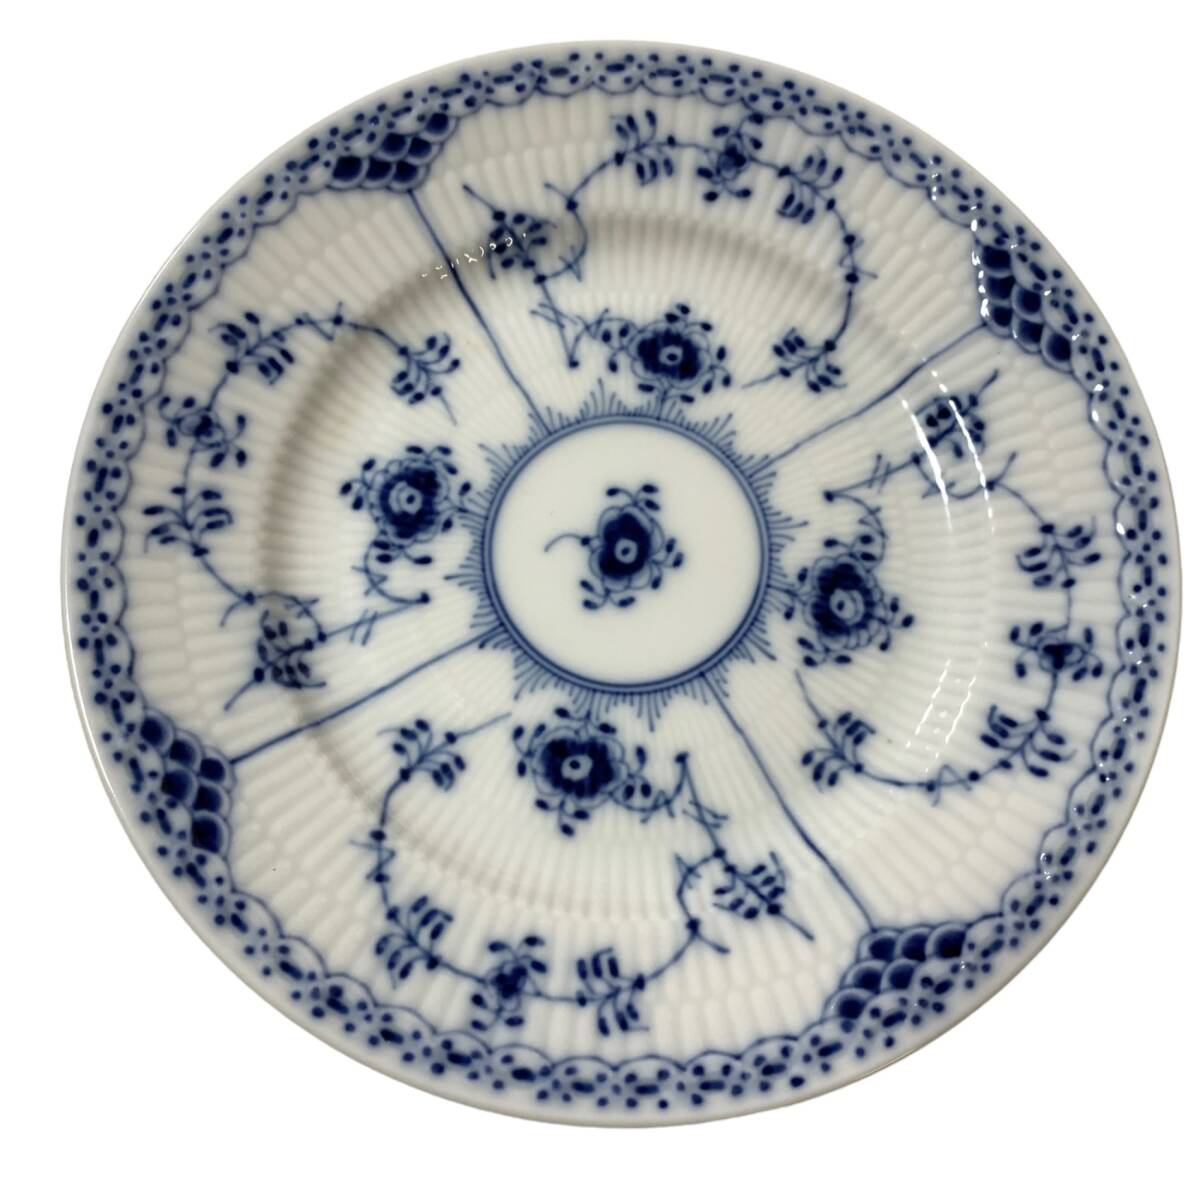 ◆中古品◆ Royal Copenhagen ロイヤルコペンハーゲン ブルーフルーテッド ハーフレース 574 プレート 2枚セット 食器 皿 kyP7988Nの画像4